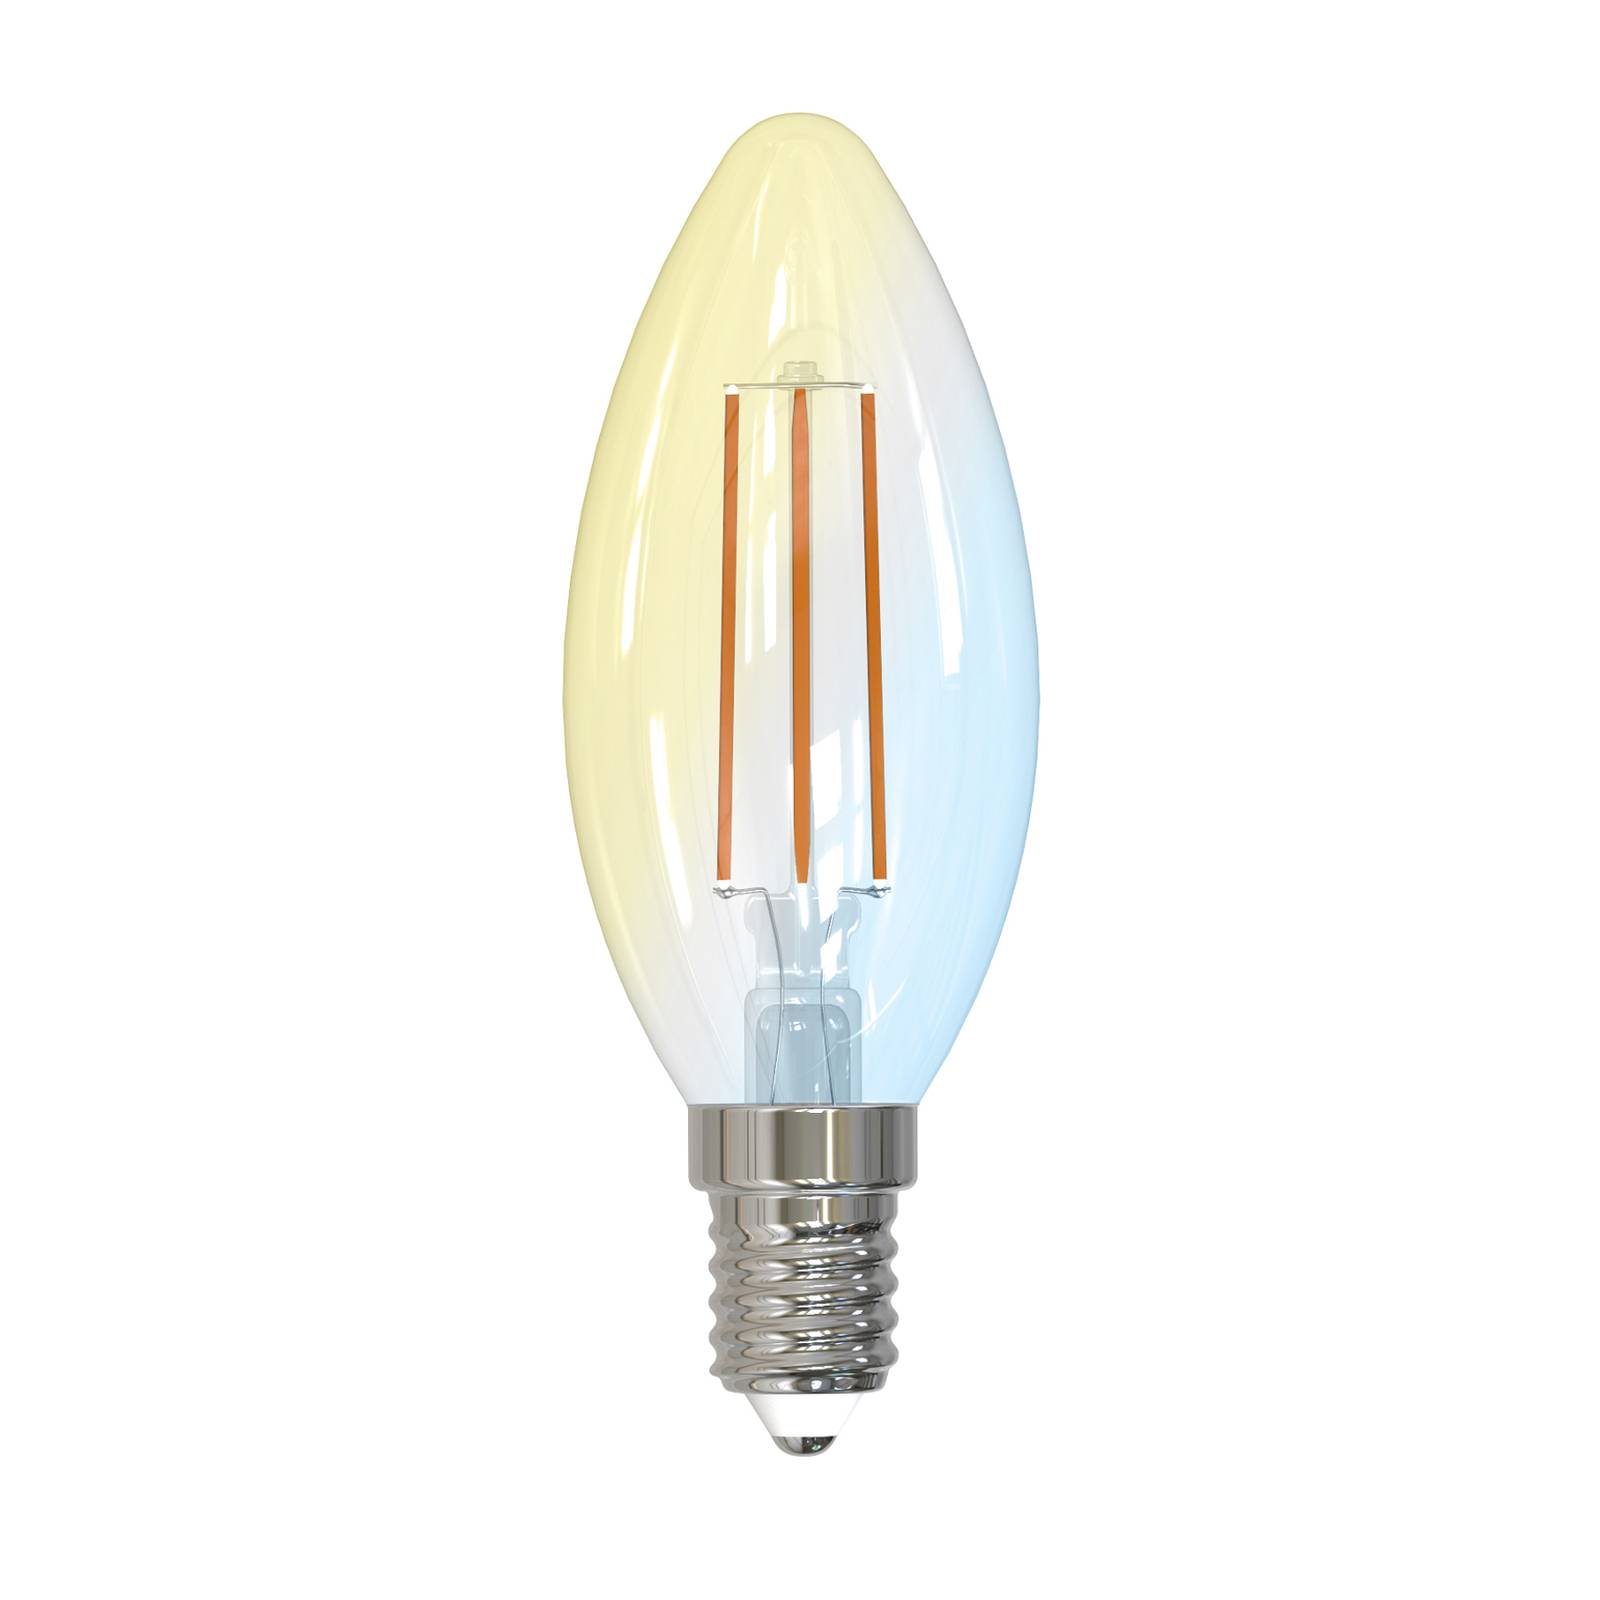 PRIOS Smart LED-Kerze E14 4,2W WLAN klar tunable white